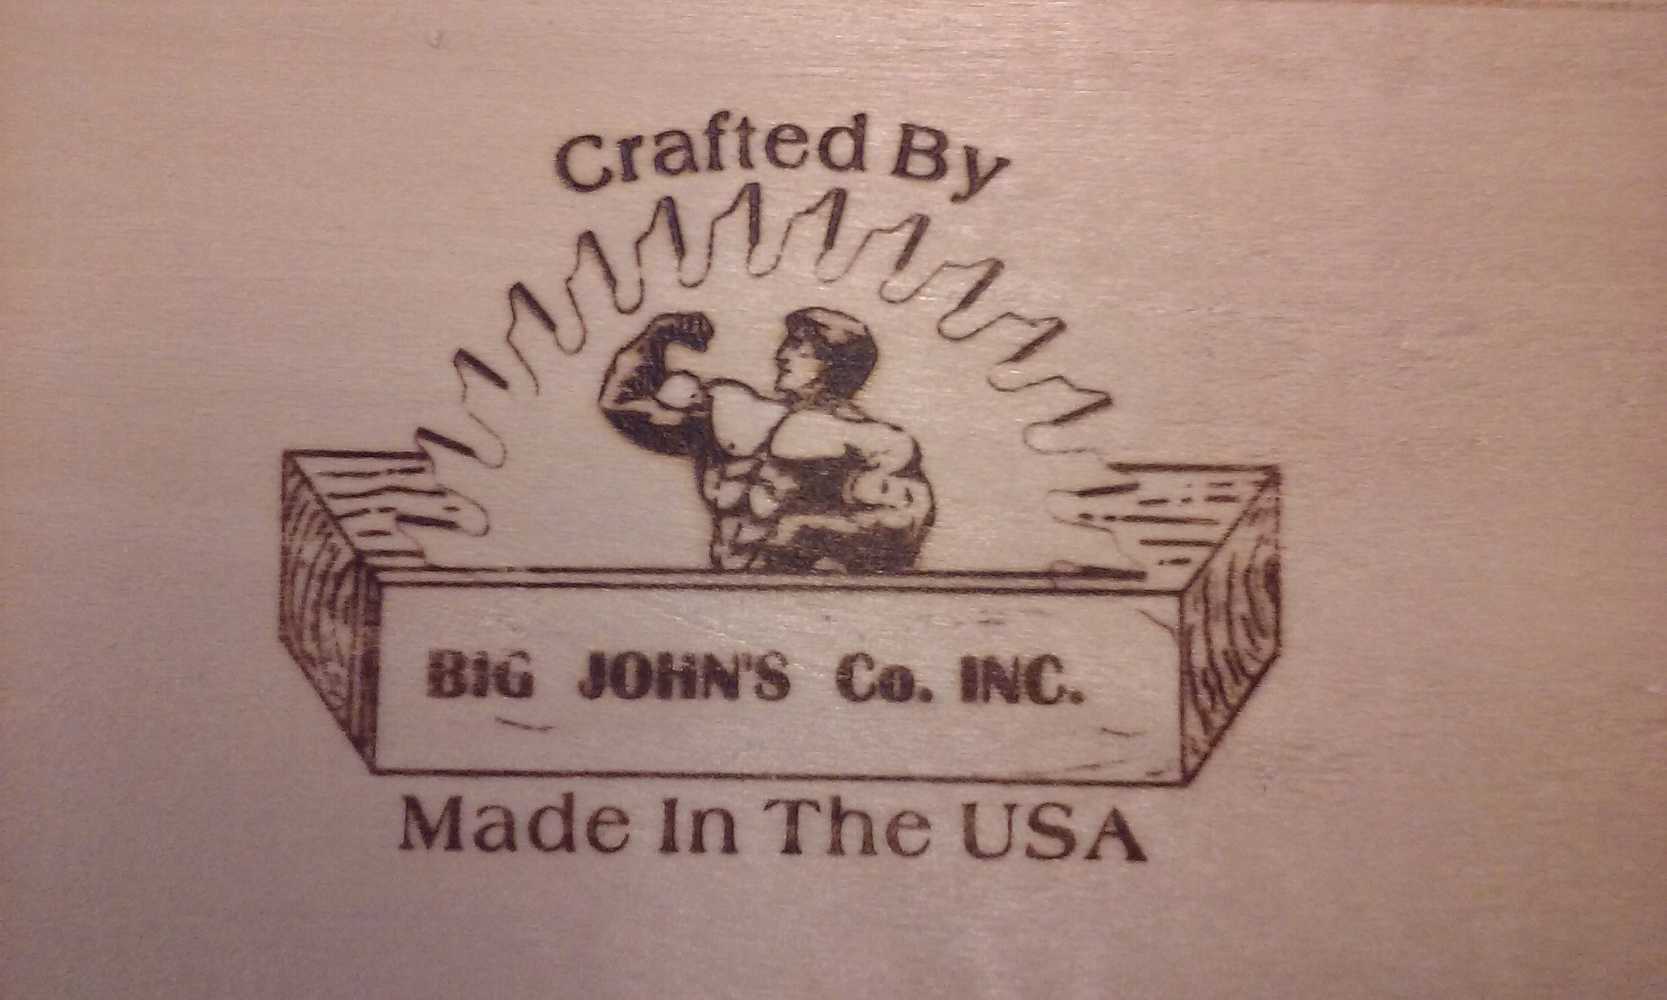 Photo(s) from Big John's Company Inc.